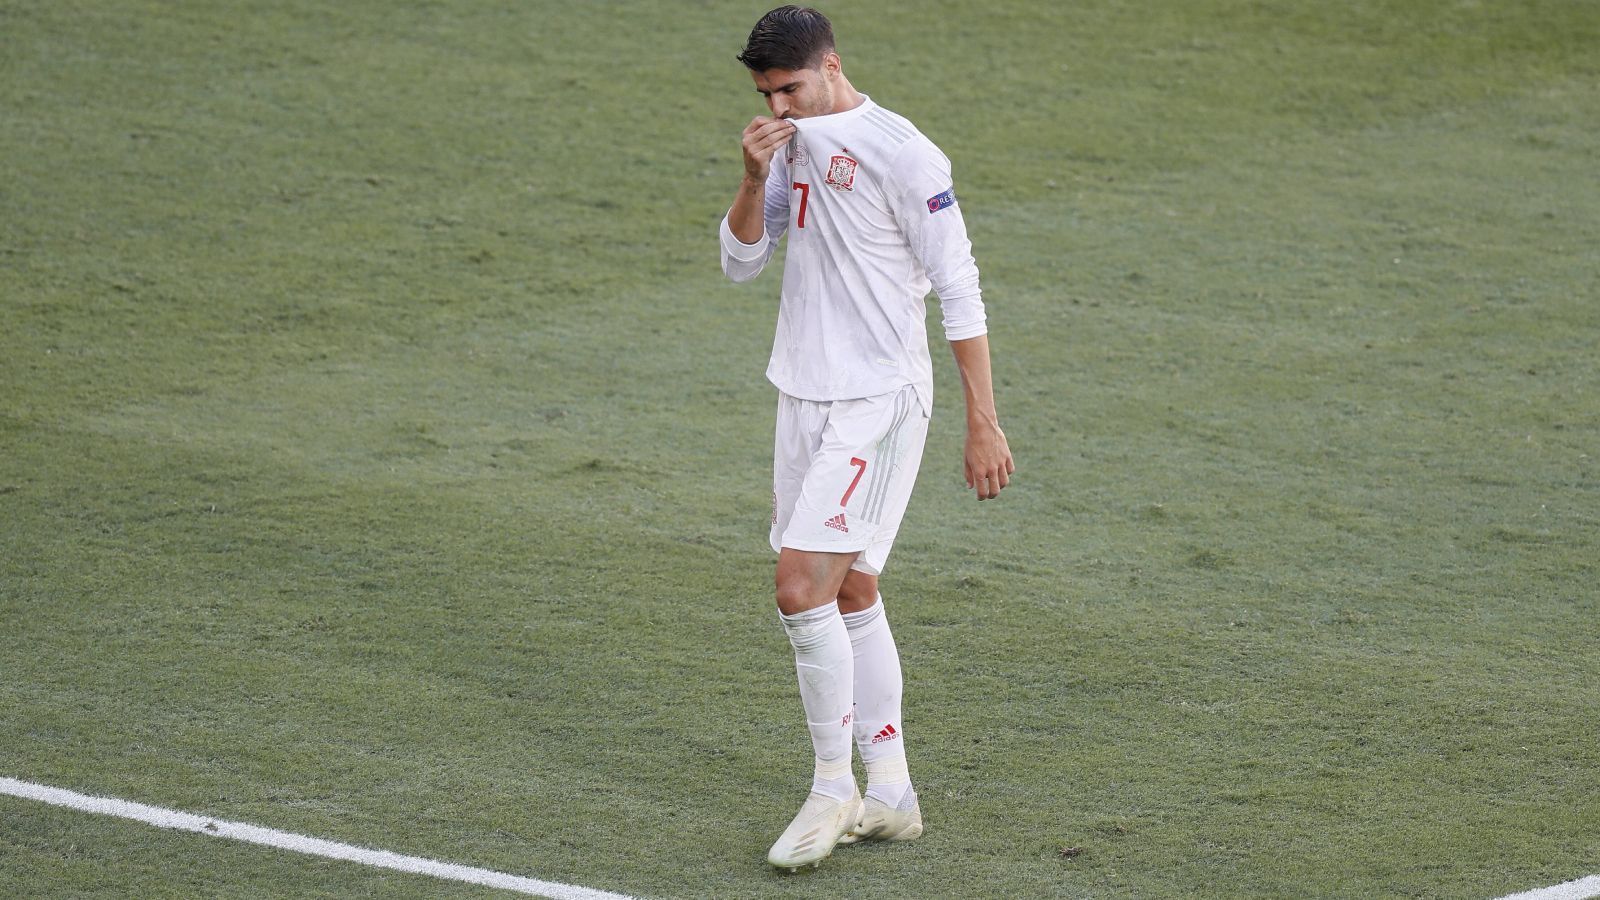 
                <strong>Spanien</strong><br>
                Bis zum letzten Spieltag der Gruppe war nicht klar, ob Spanien in der K.o.-Runde der Euro vertreten sein würde. Einem einfallslosen 0:0 gegen Schweden folgte ein enttäuschendes 1:1 gegen Polen. Im letzten Spiel gegen die Slowakei schossen sich die Iberer beim 5:0 zwar den Frust von der Seele, die Probleme der Seleccion bleiben jedoch bestehen. Immerhin: Spanien geht mit einem guten Gefühl in das Spiel gegen Kroatien.
              